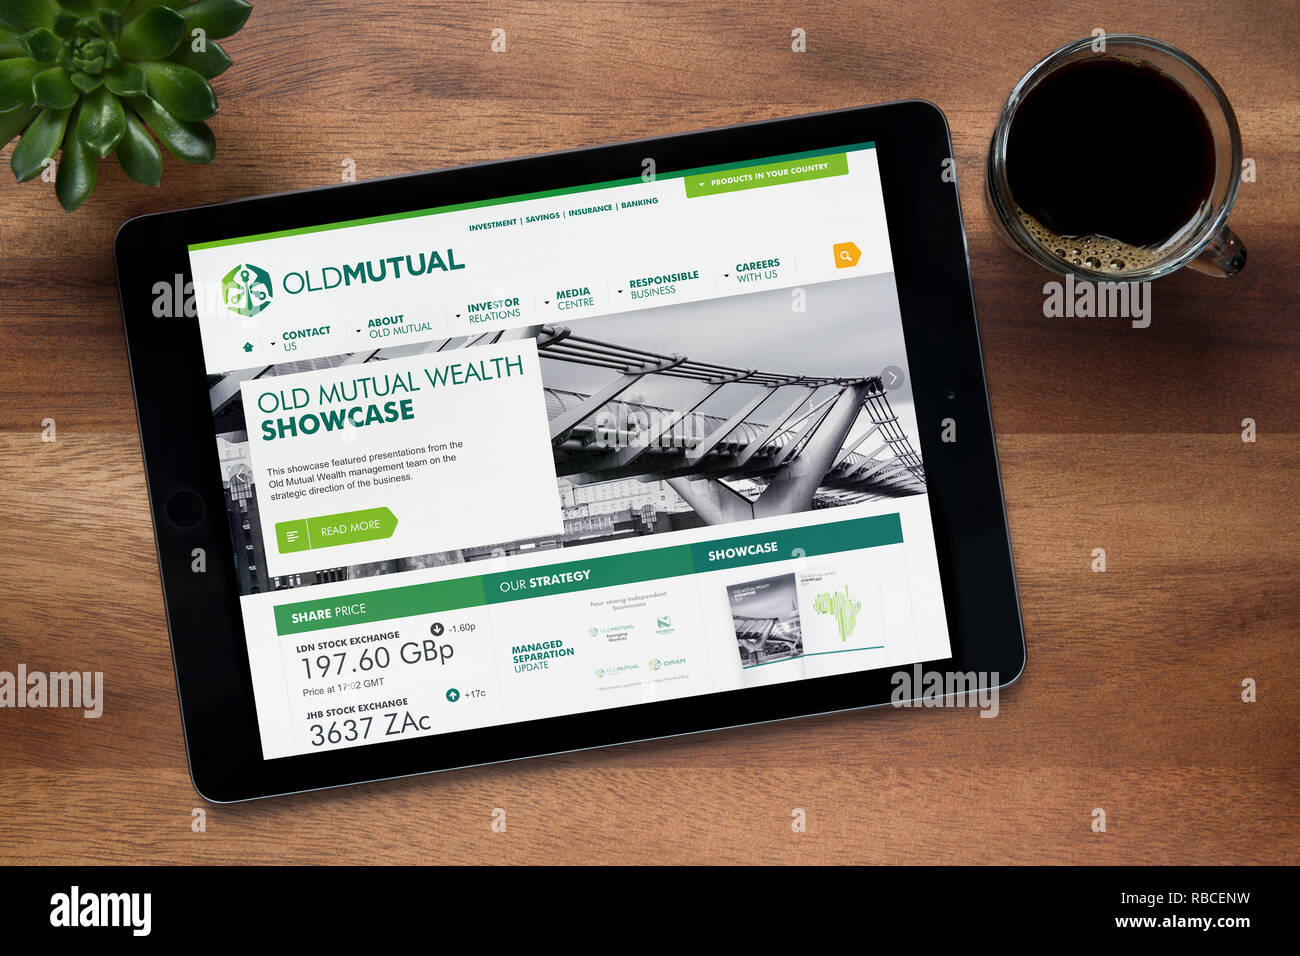 Le site de Old Mutual est vu sur un iPad tablet, sur une table en bois avec une machine à expresso et d'une plante (usage éditorial uniquement). Banque D'Images